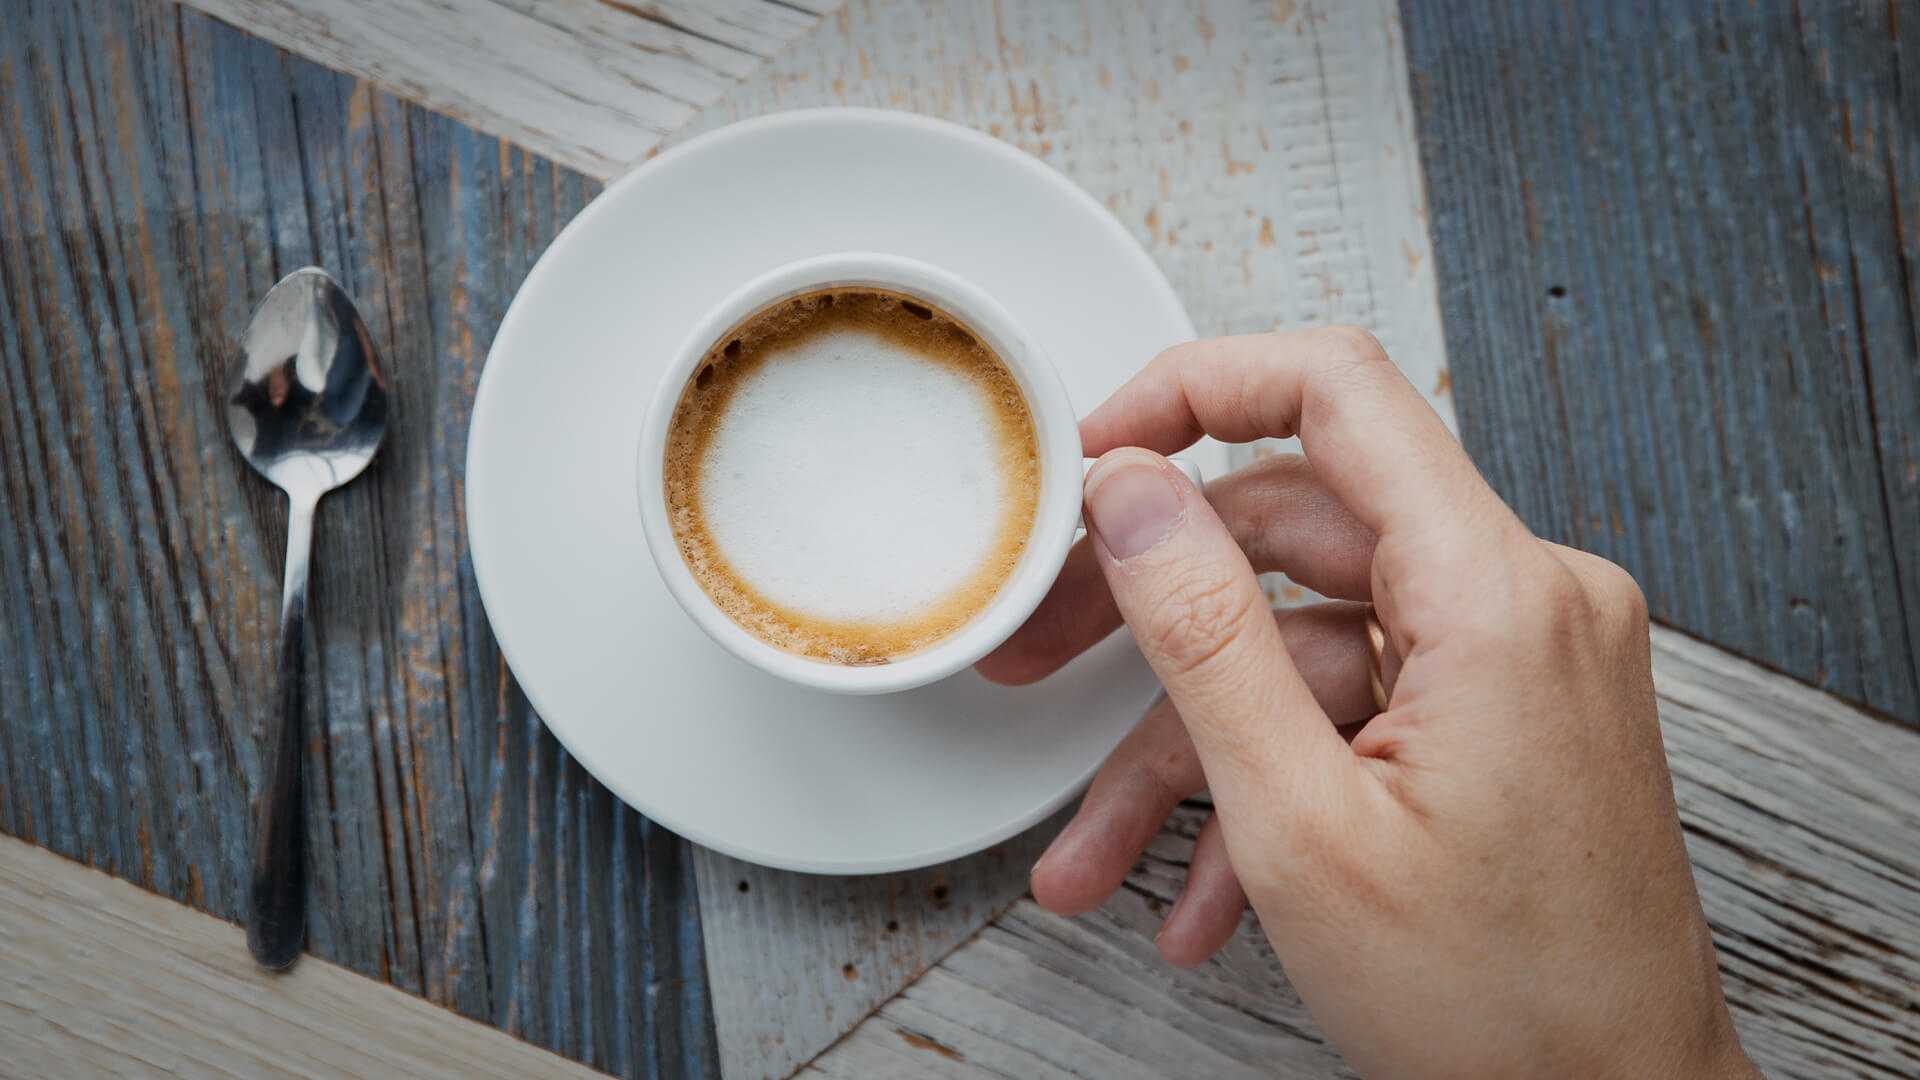 Löffel neben einer gefüllten Kaffee-Tasse mit Cappuccino, welche in einer Hand gehalten wird